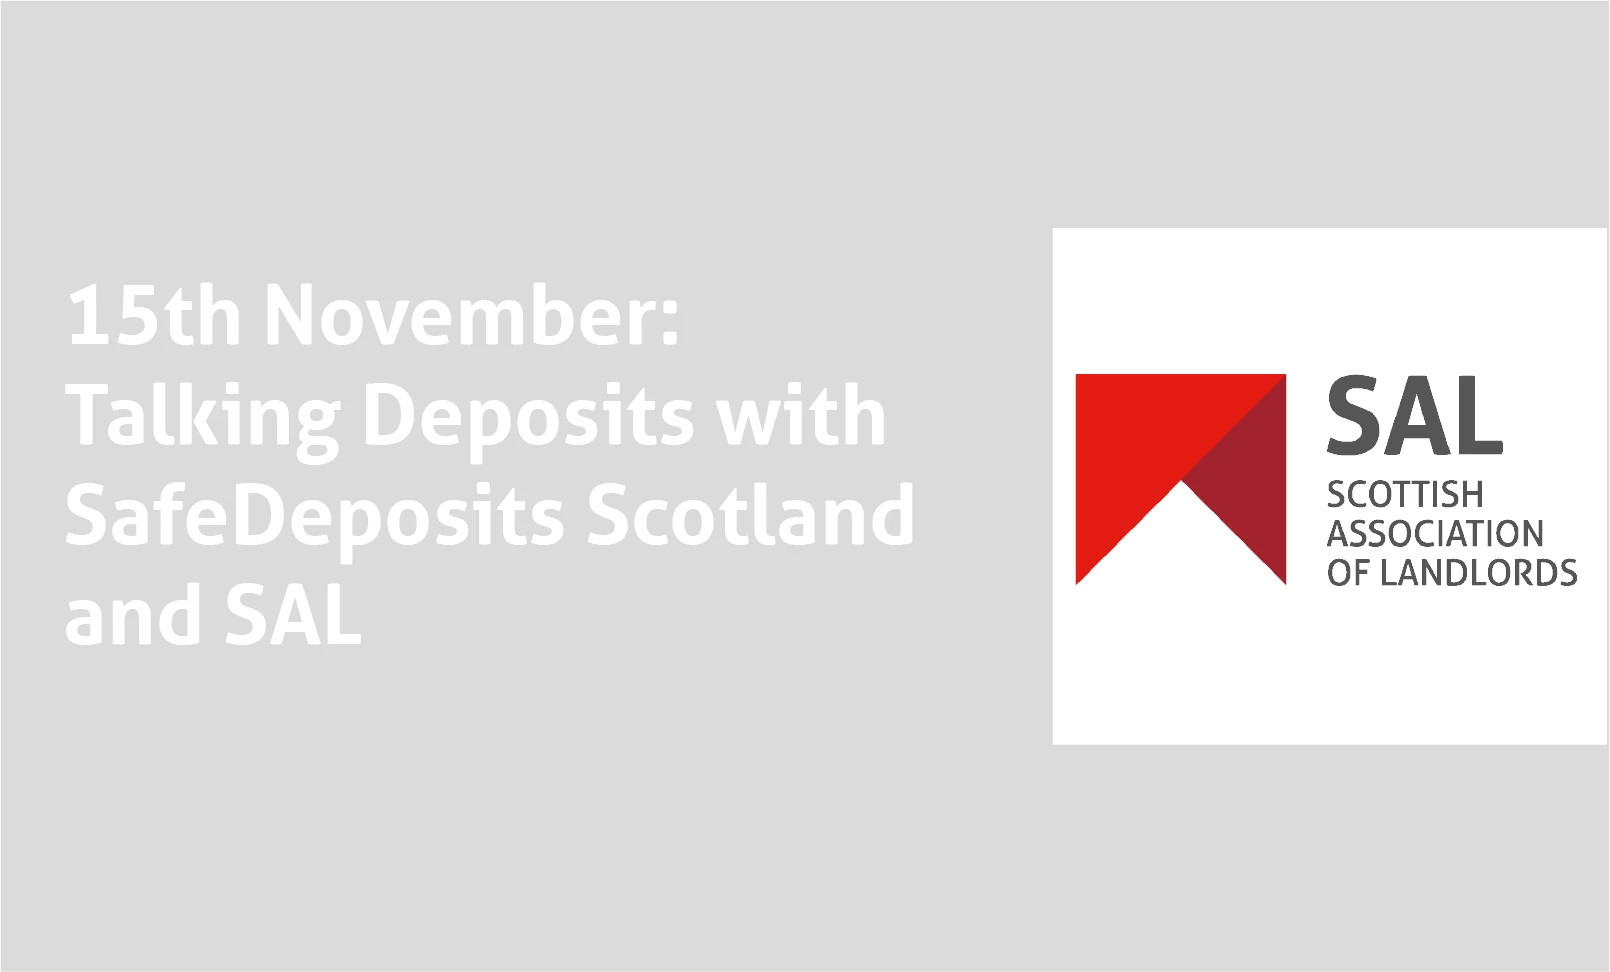 deposit scheme scotland - SafeDeposits Scotland